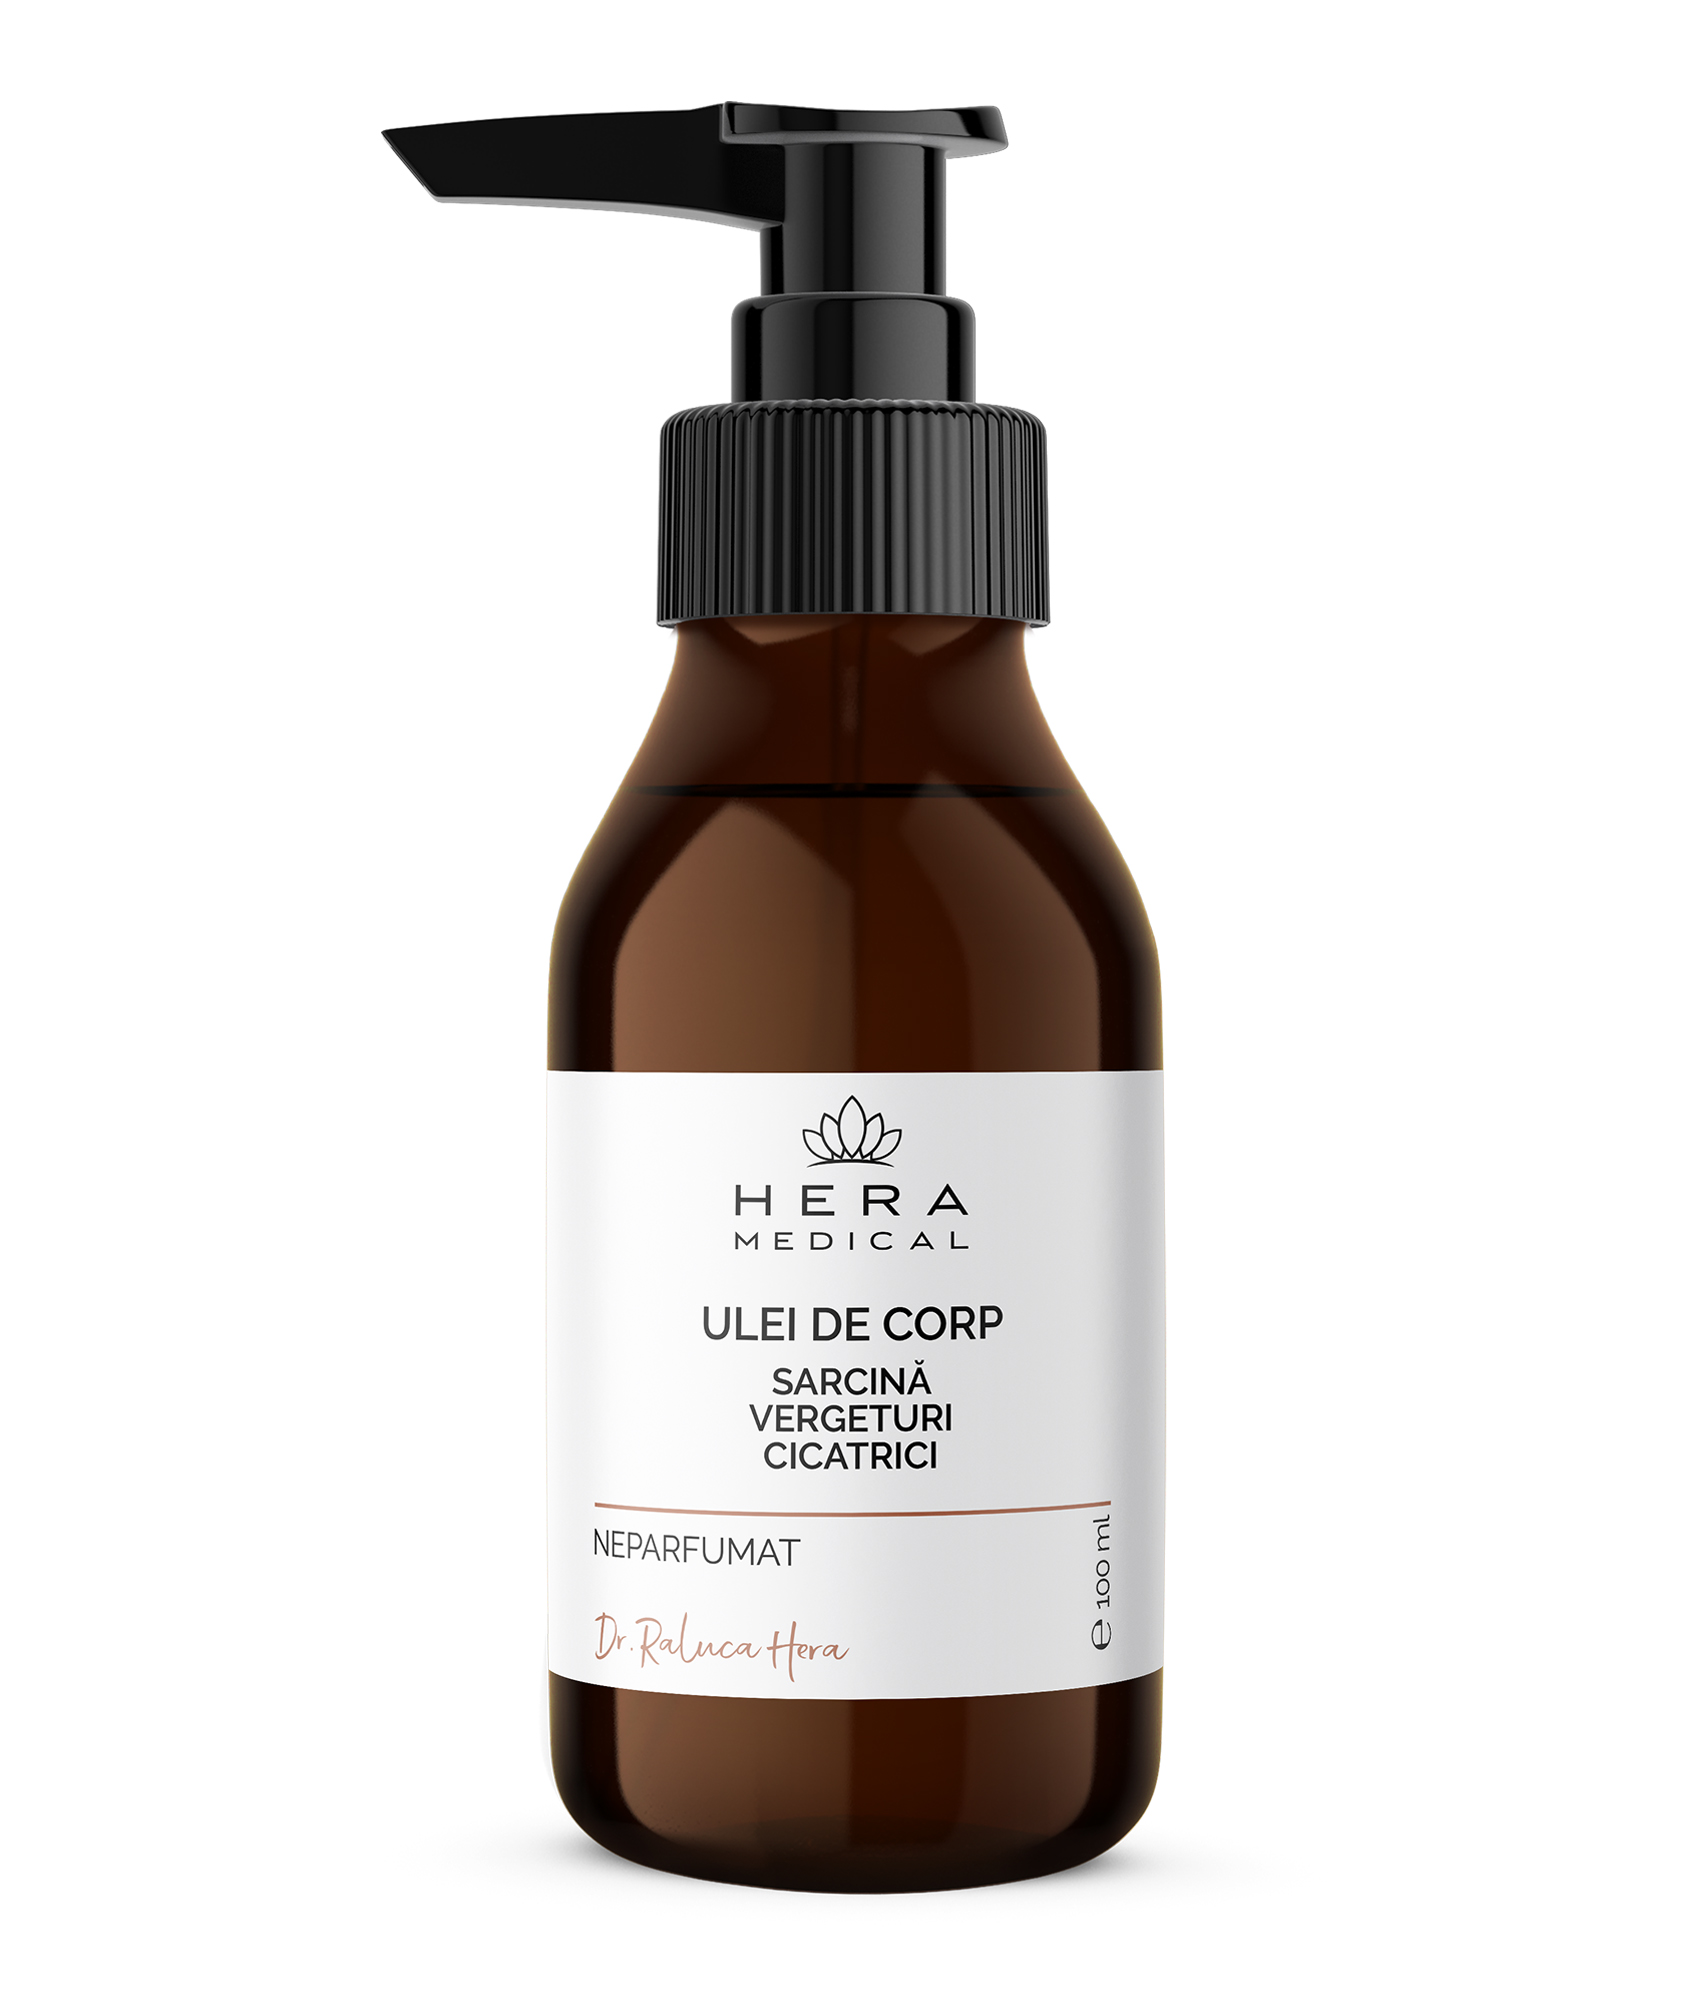 Ulei Corp | Sarcină, Vergeturi, Cicatrici, Hera Medical by Dr. Raluca Hera Haute Couture Skincare, 100 ml